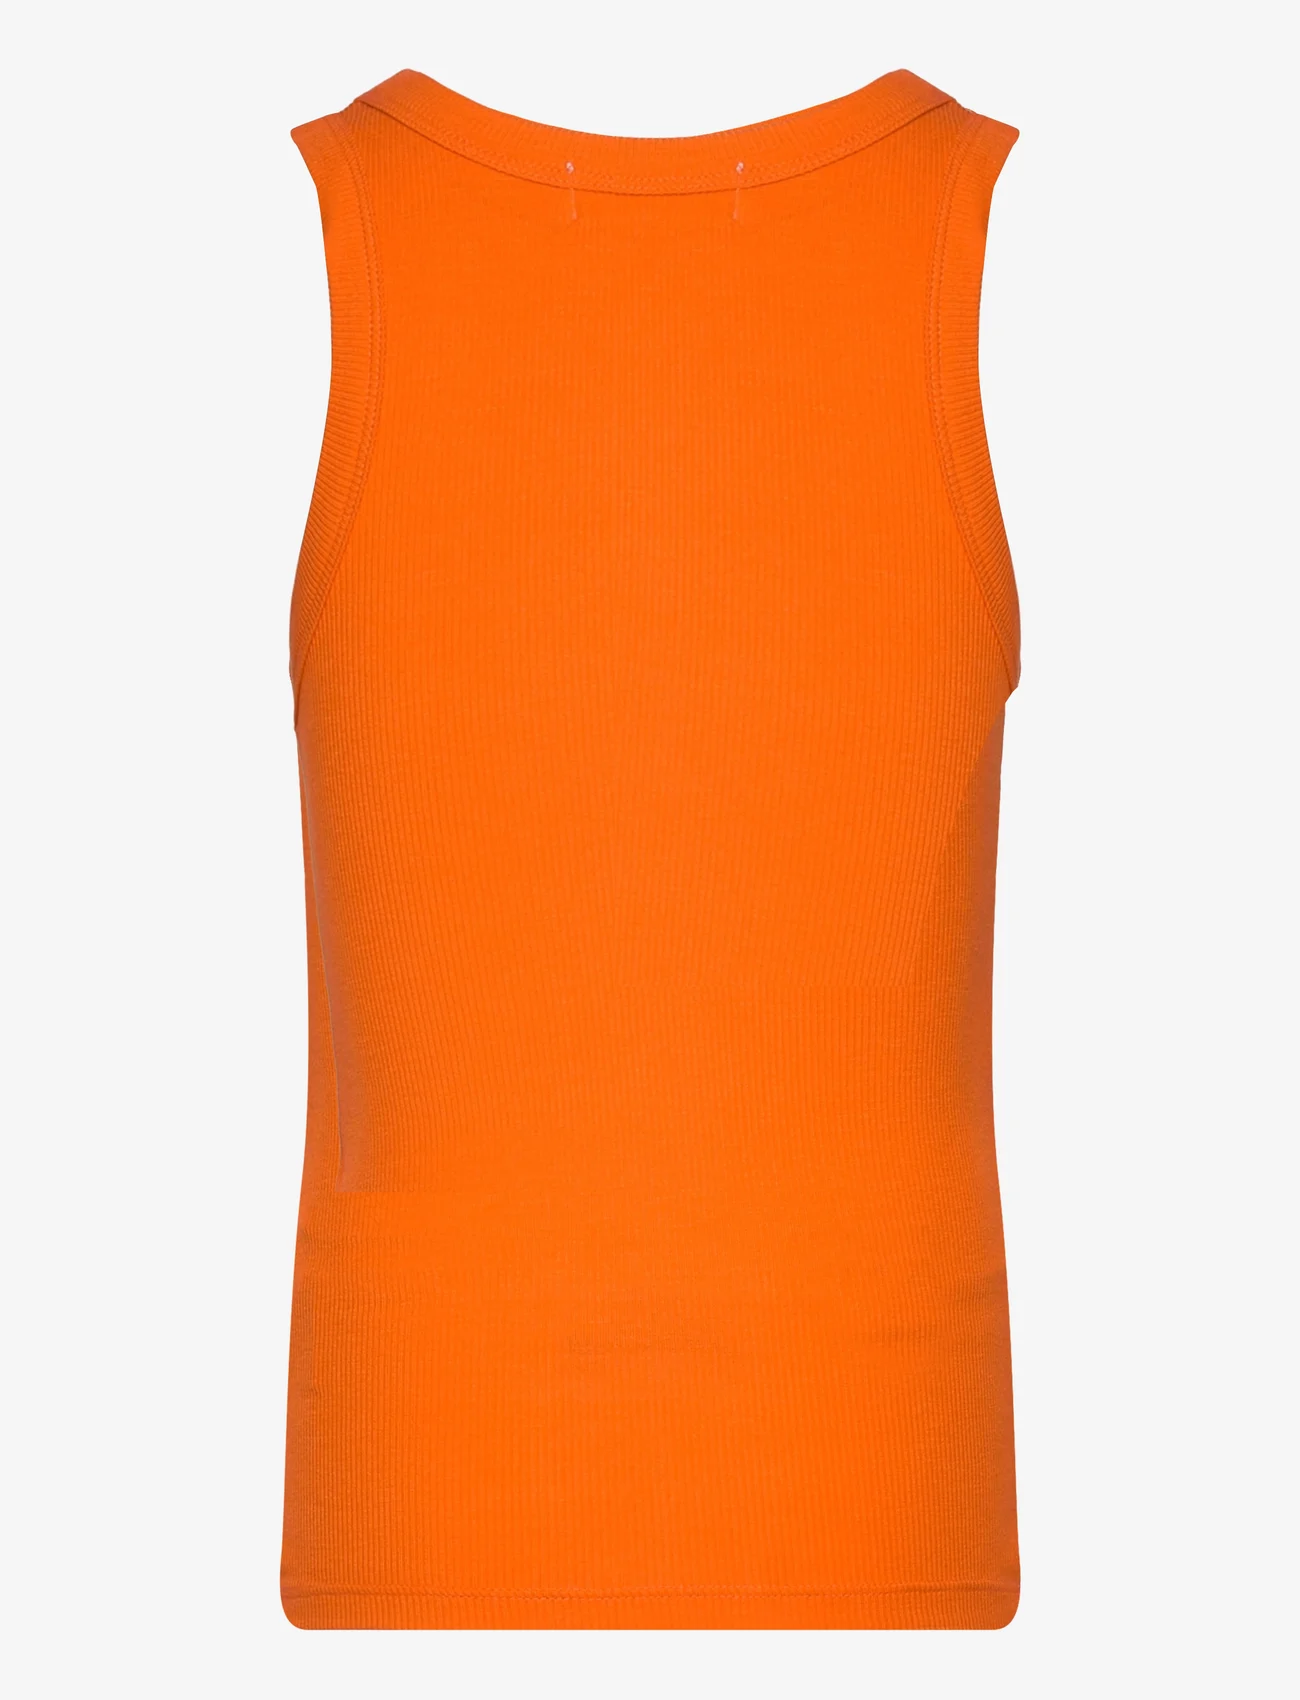 Sofie Schnoor Young - Top - mouwloze t-shirts - orange - 1